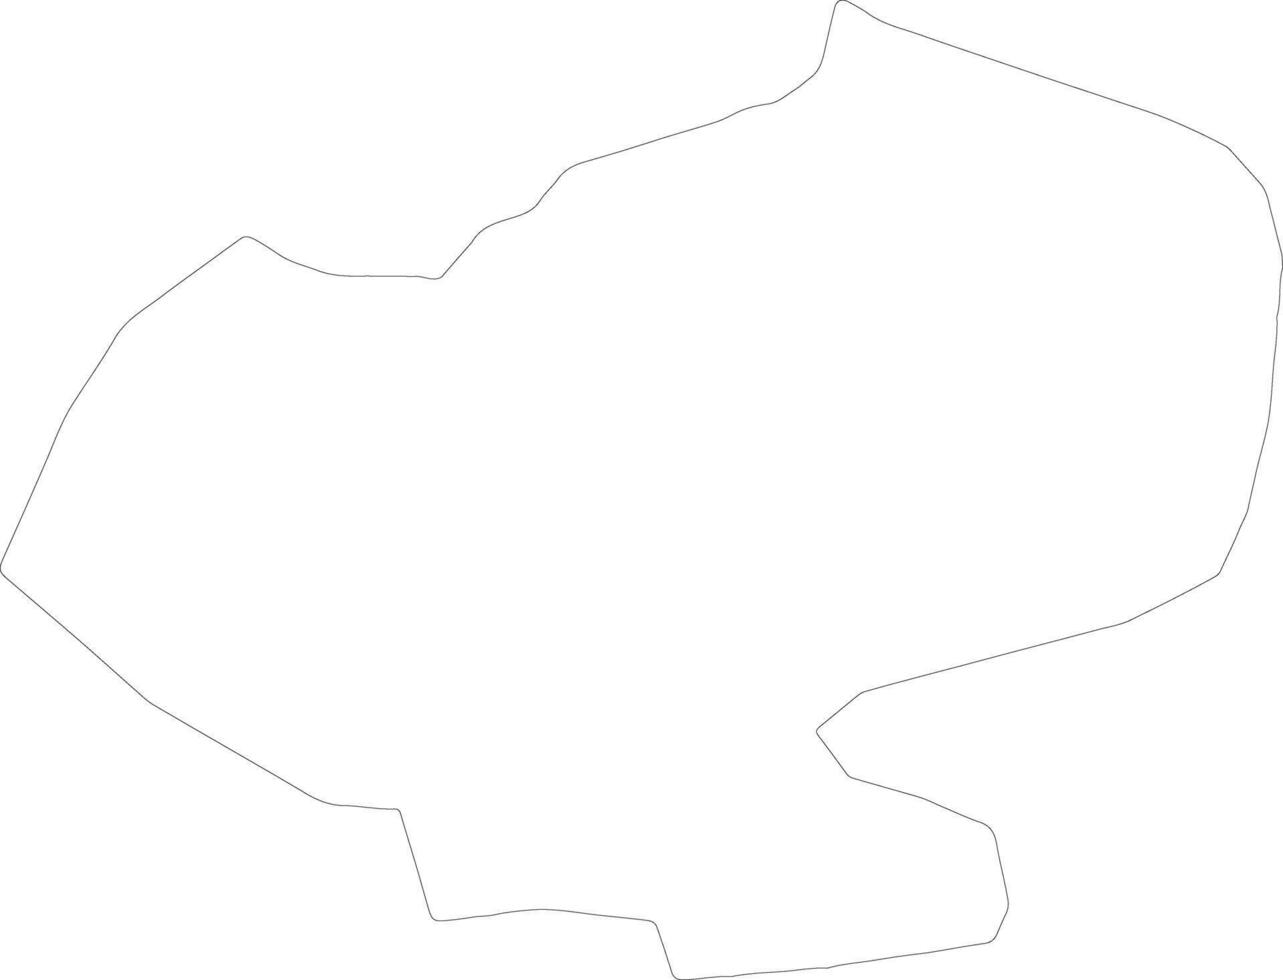 vilakas Lettonia schema carta geografica vettore